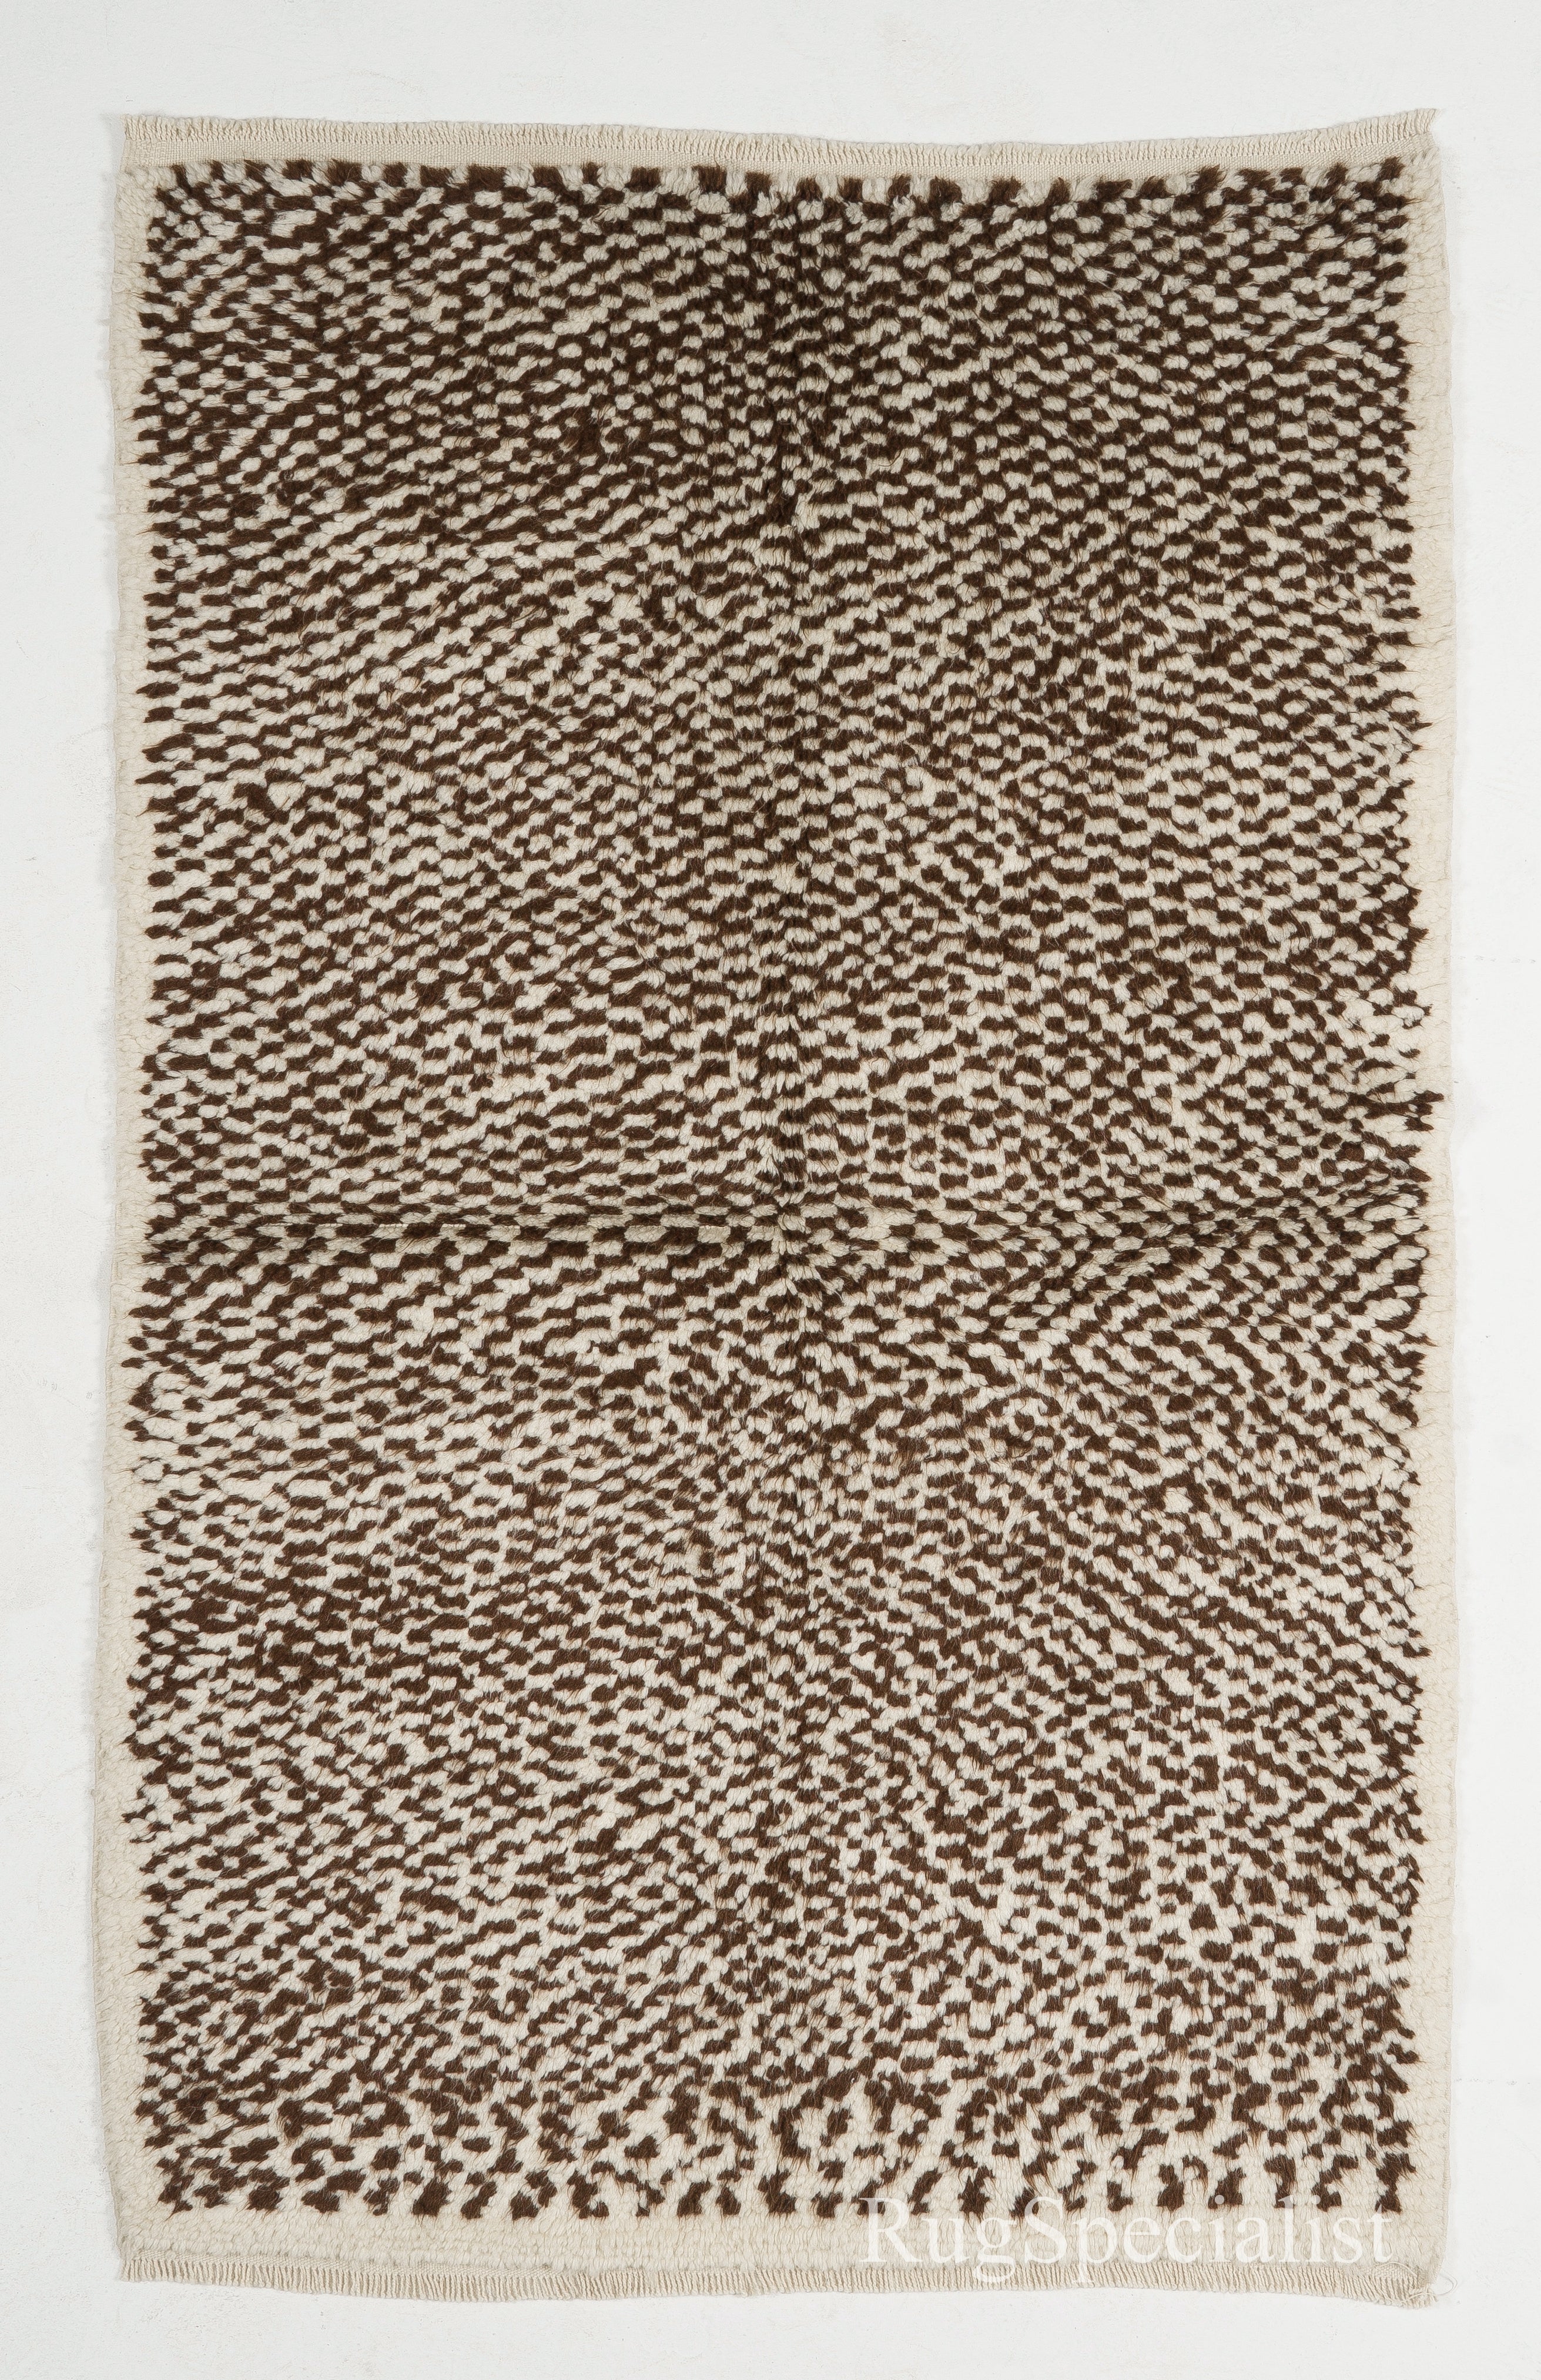 Karierter Tulu-Teppich, 100 % natürliche Wolle, cremefarben und braun, maßgefertigt erhältlich